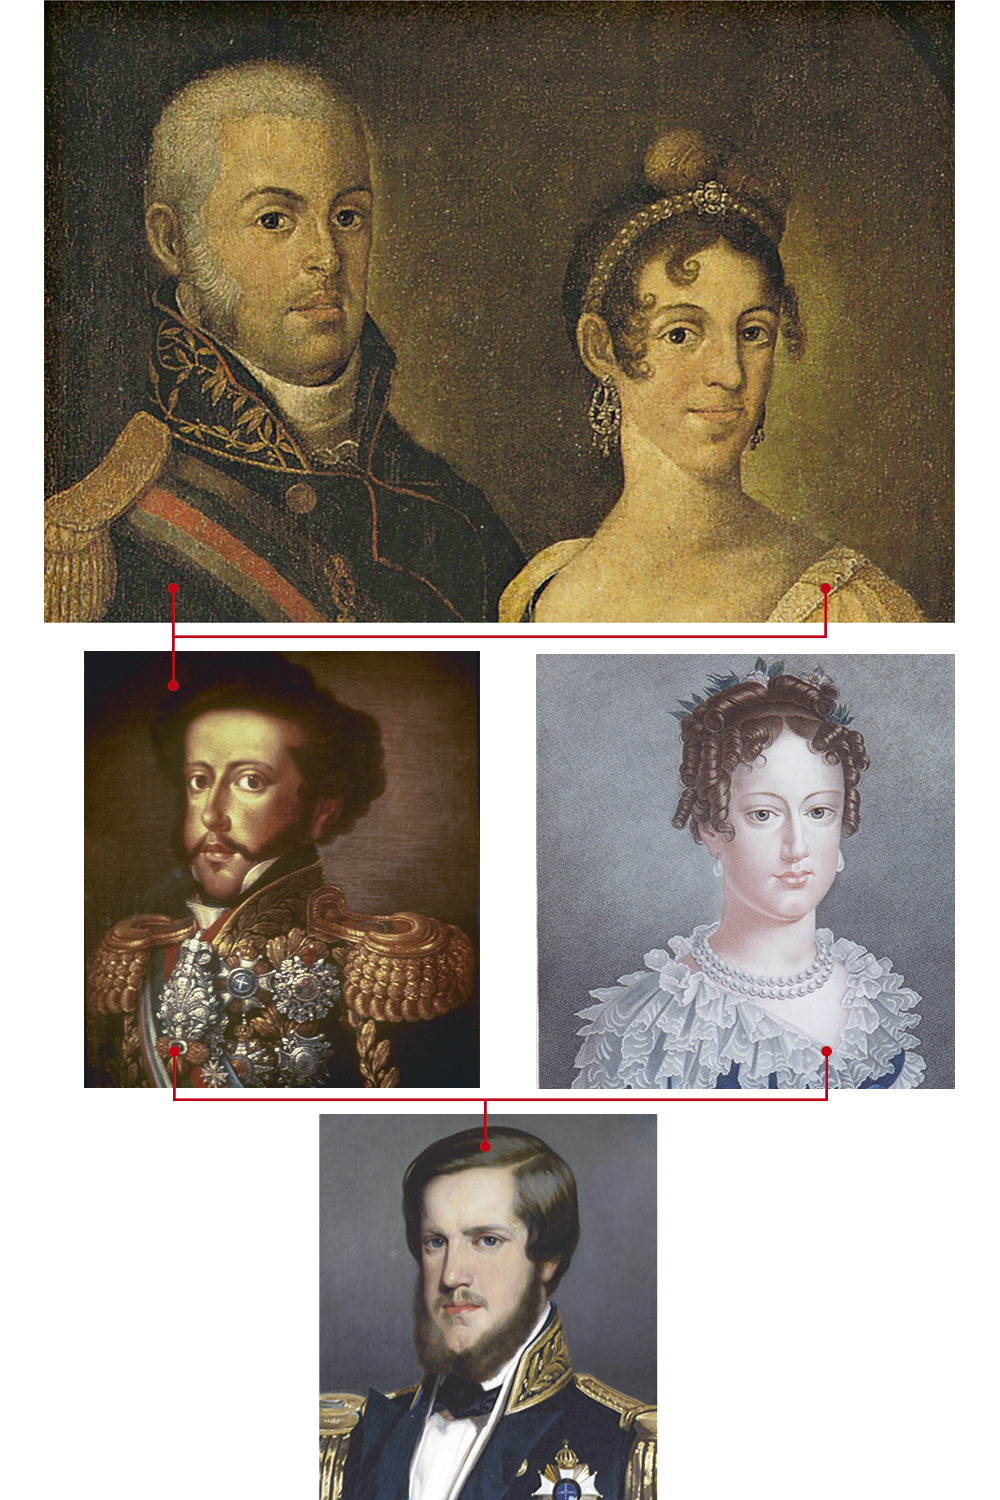 A MARCA DA ASCENDÊNCIA - João VI e a mulher, Carlota Joaquina (no alto), carregavam os genes dos Habsburgo, mas o queixo avantajado só se manifestou nela. O filho Pedro I (acima) herdou os traços do pai. Leopoldina tinha o lábio inferior maior que o superior, outra marca da dinastia. Pedro II usava barba para disfarçar o atributo -